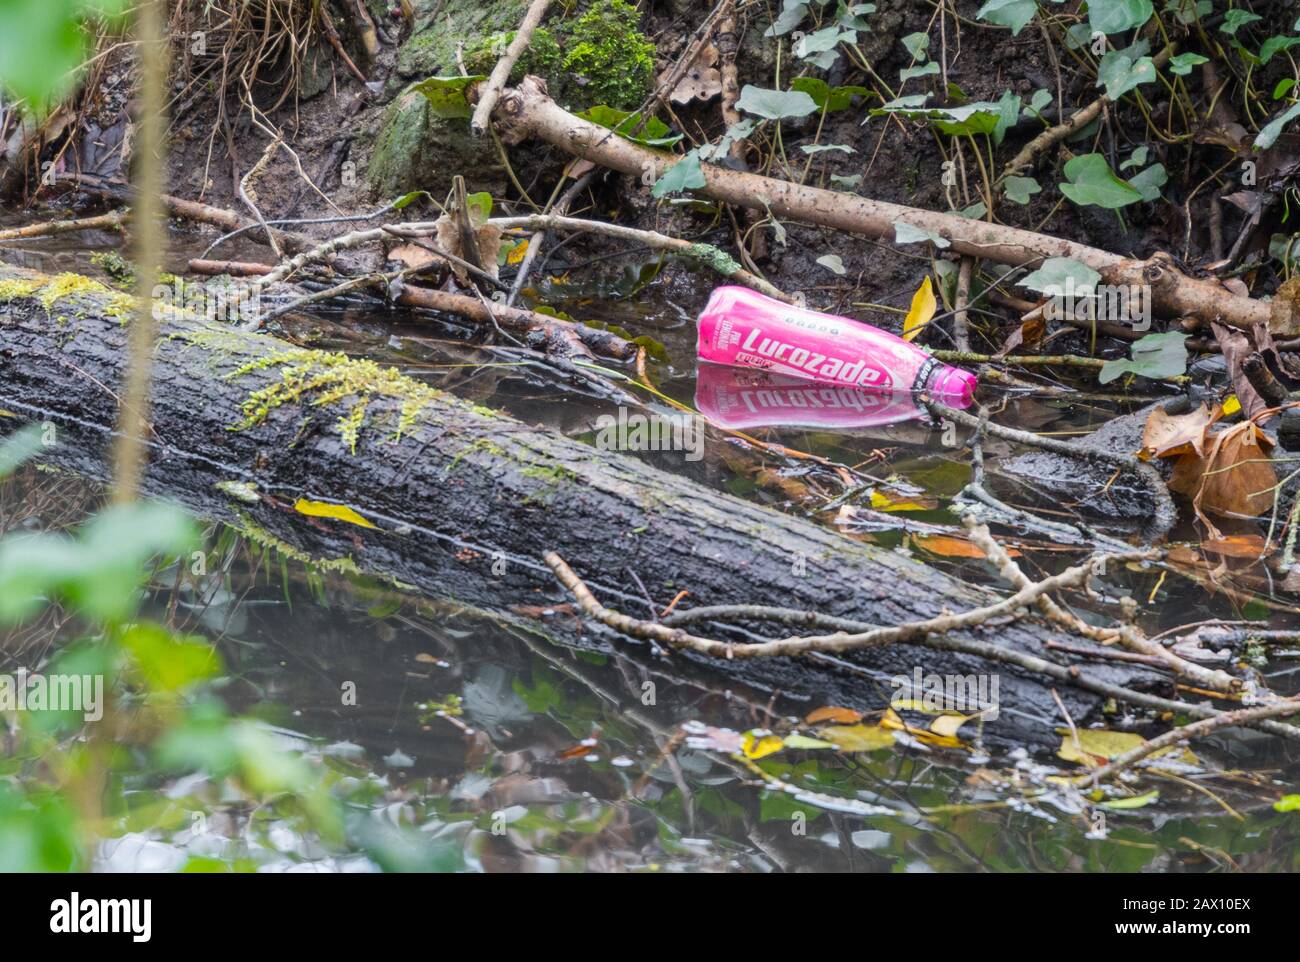 Bouteille en plastique jetée, assise dans l'eau dans un petit ruisseau. Pollution des déchets plastiques. Banque D'Images